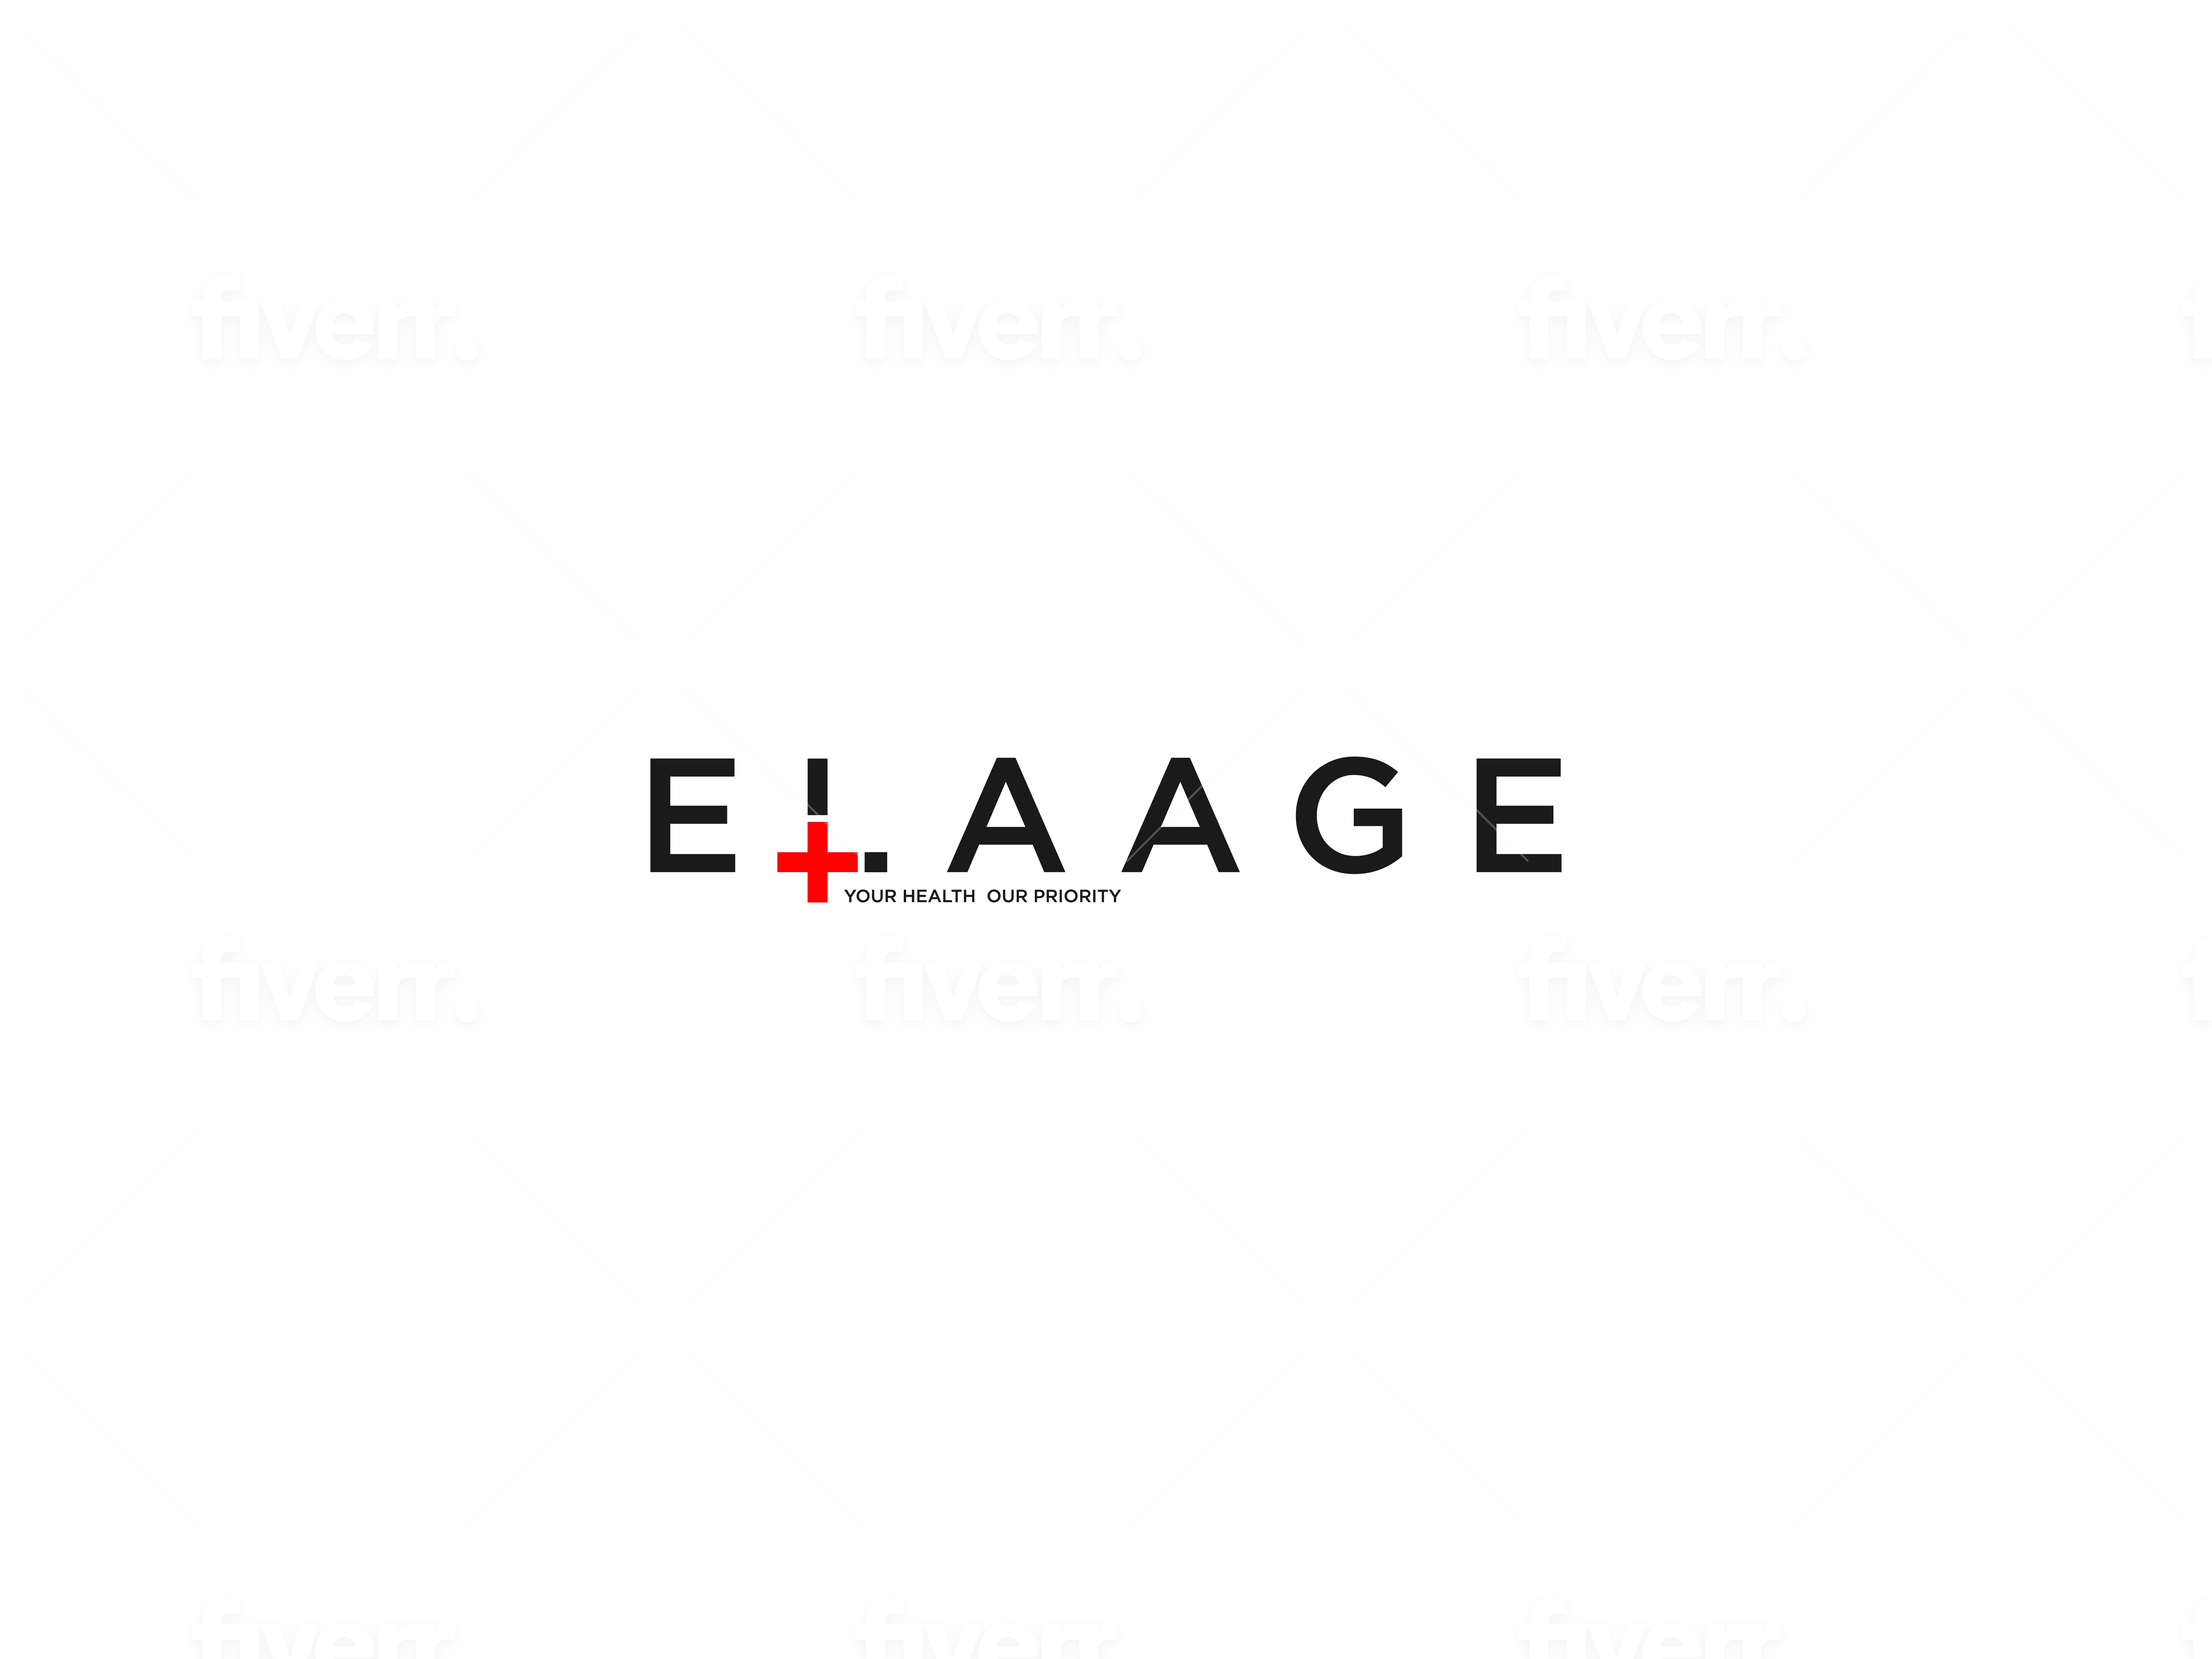 Elaage